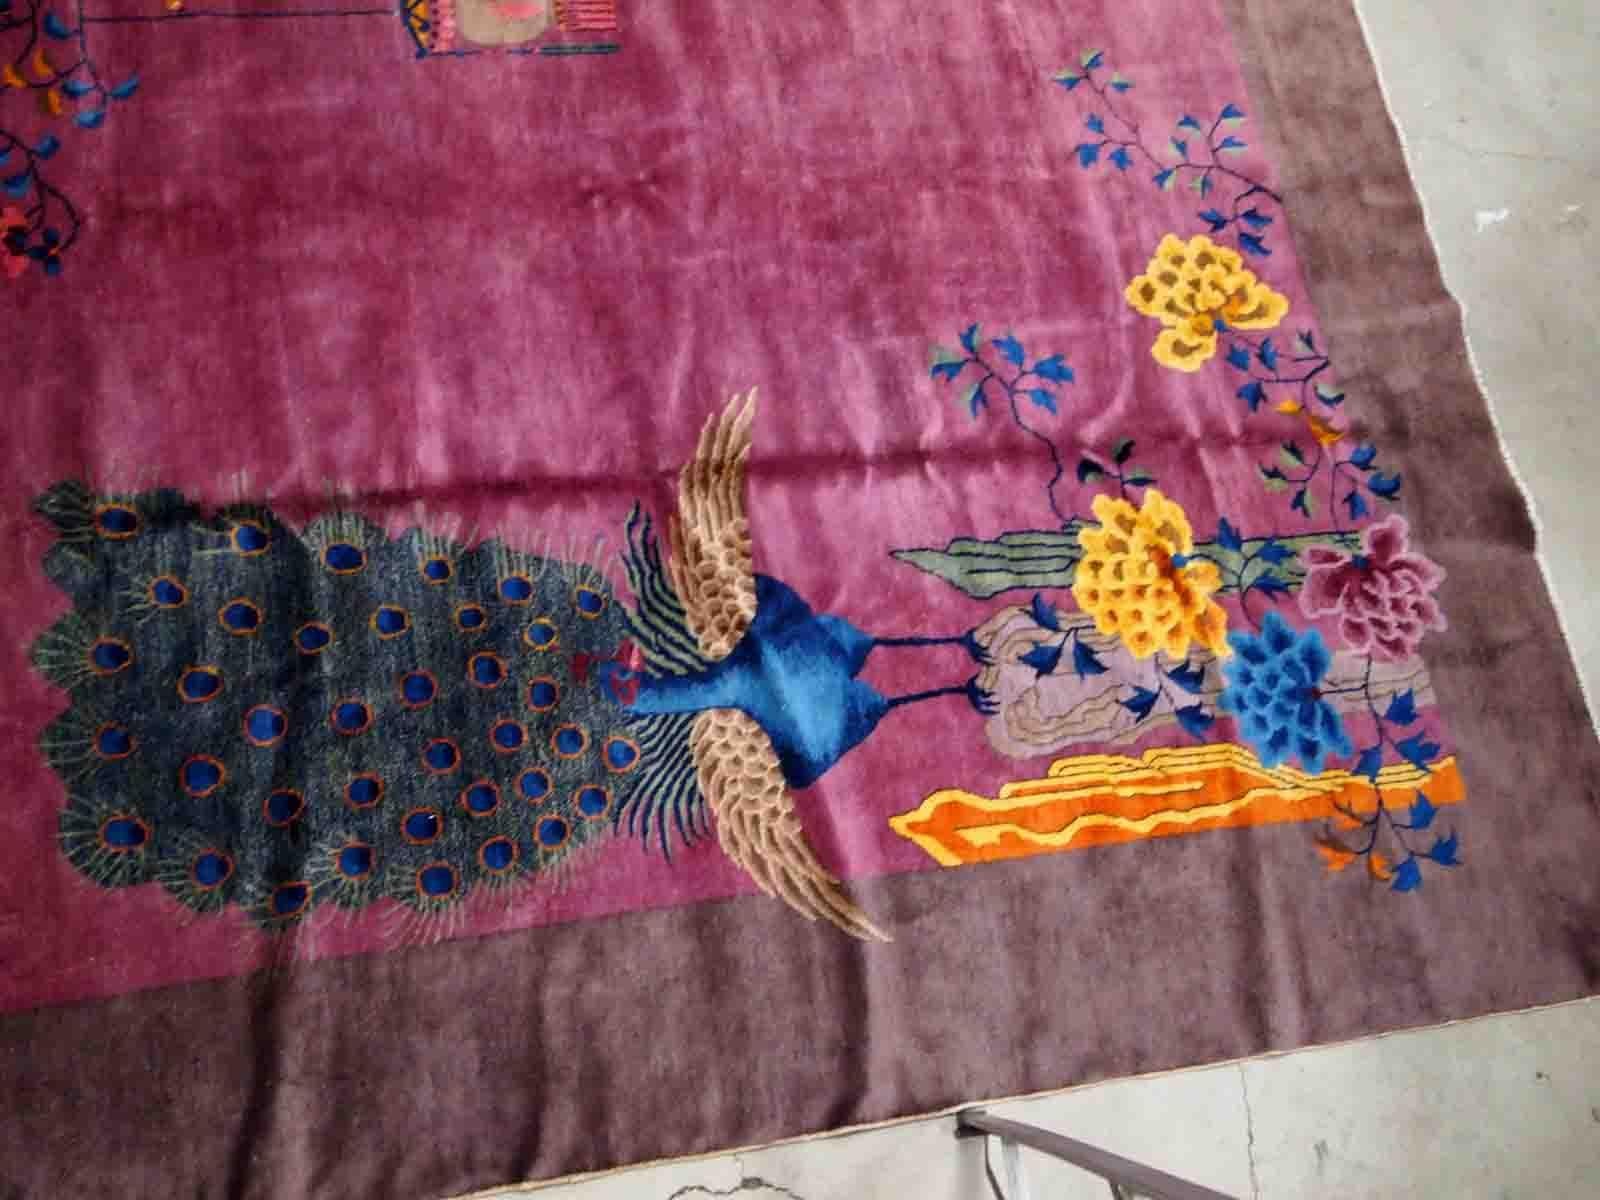 Handgefertigter antiker chinesischer Art-Déco-Teppich in Rubin- und Burgundtönen. Der Teppich stammt vom Anfang des 20. Jahrhunderts und ist in gutem Originalzustand. Es hat einige florale Akzent mit großen Pfau auf sie.

-zustand: original